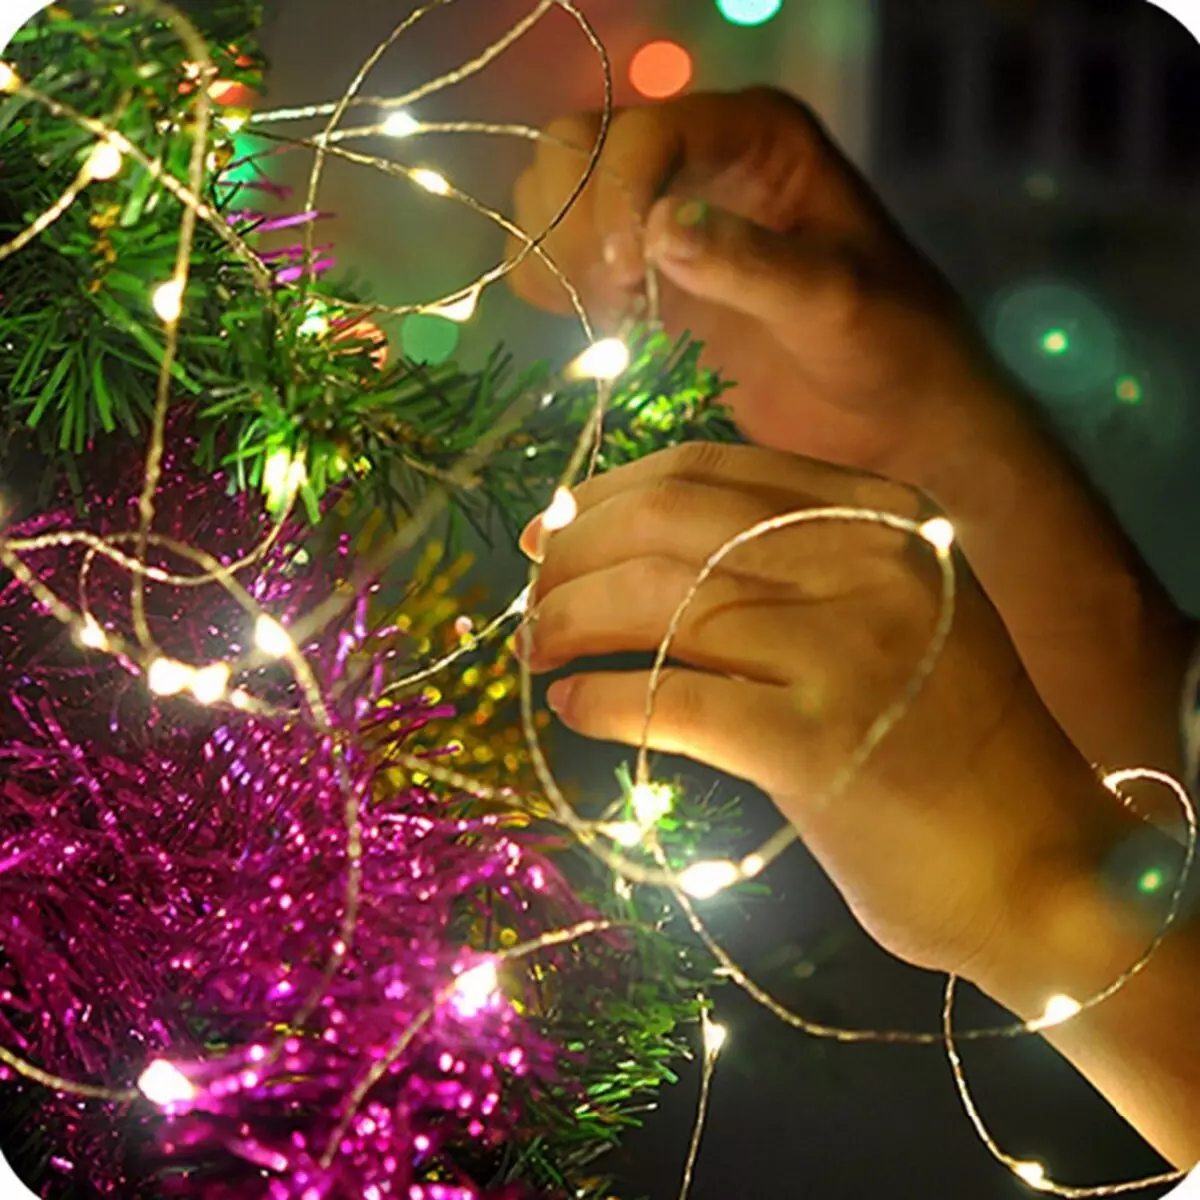 Ako zdobí vianočný strom s vencom? Ako správne a krásne obliekať to podľa schémy s žiariace elektrickej girlandami a ďalšie veniec? 7630_17